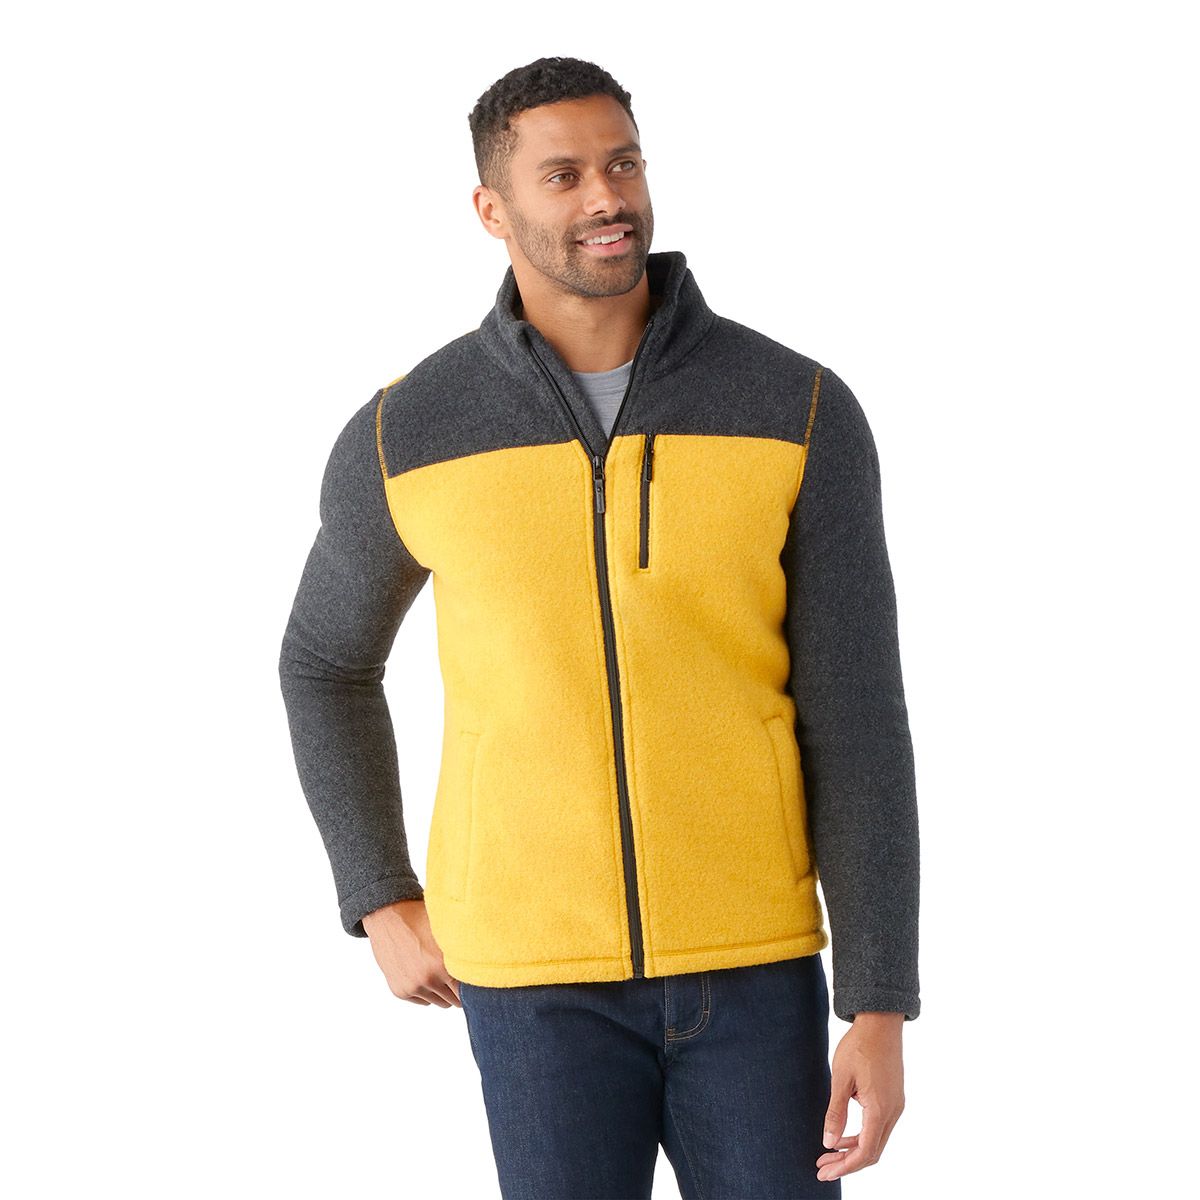 Men's Full-Zip Fleece Jacket